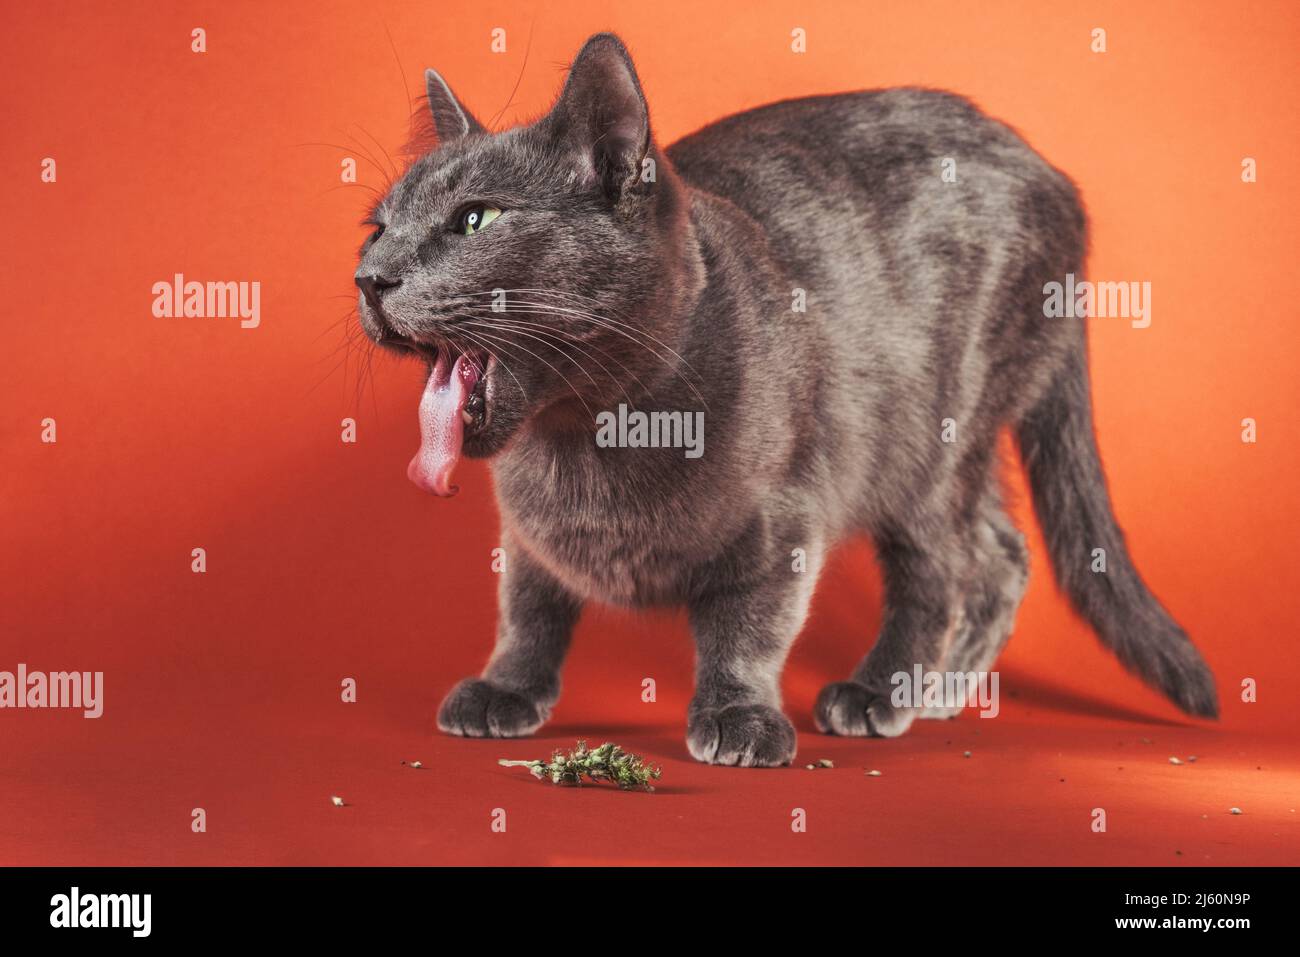 Retrato de estudio de cuerpo completo de un gato gris con la lengua completamente extendida mientras come catenibo. Foto de stock